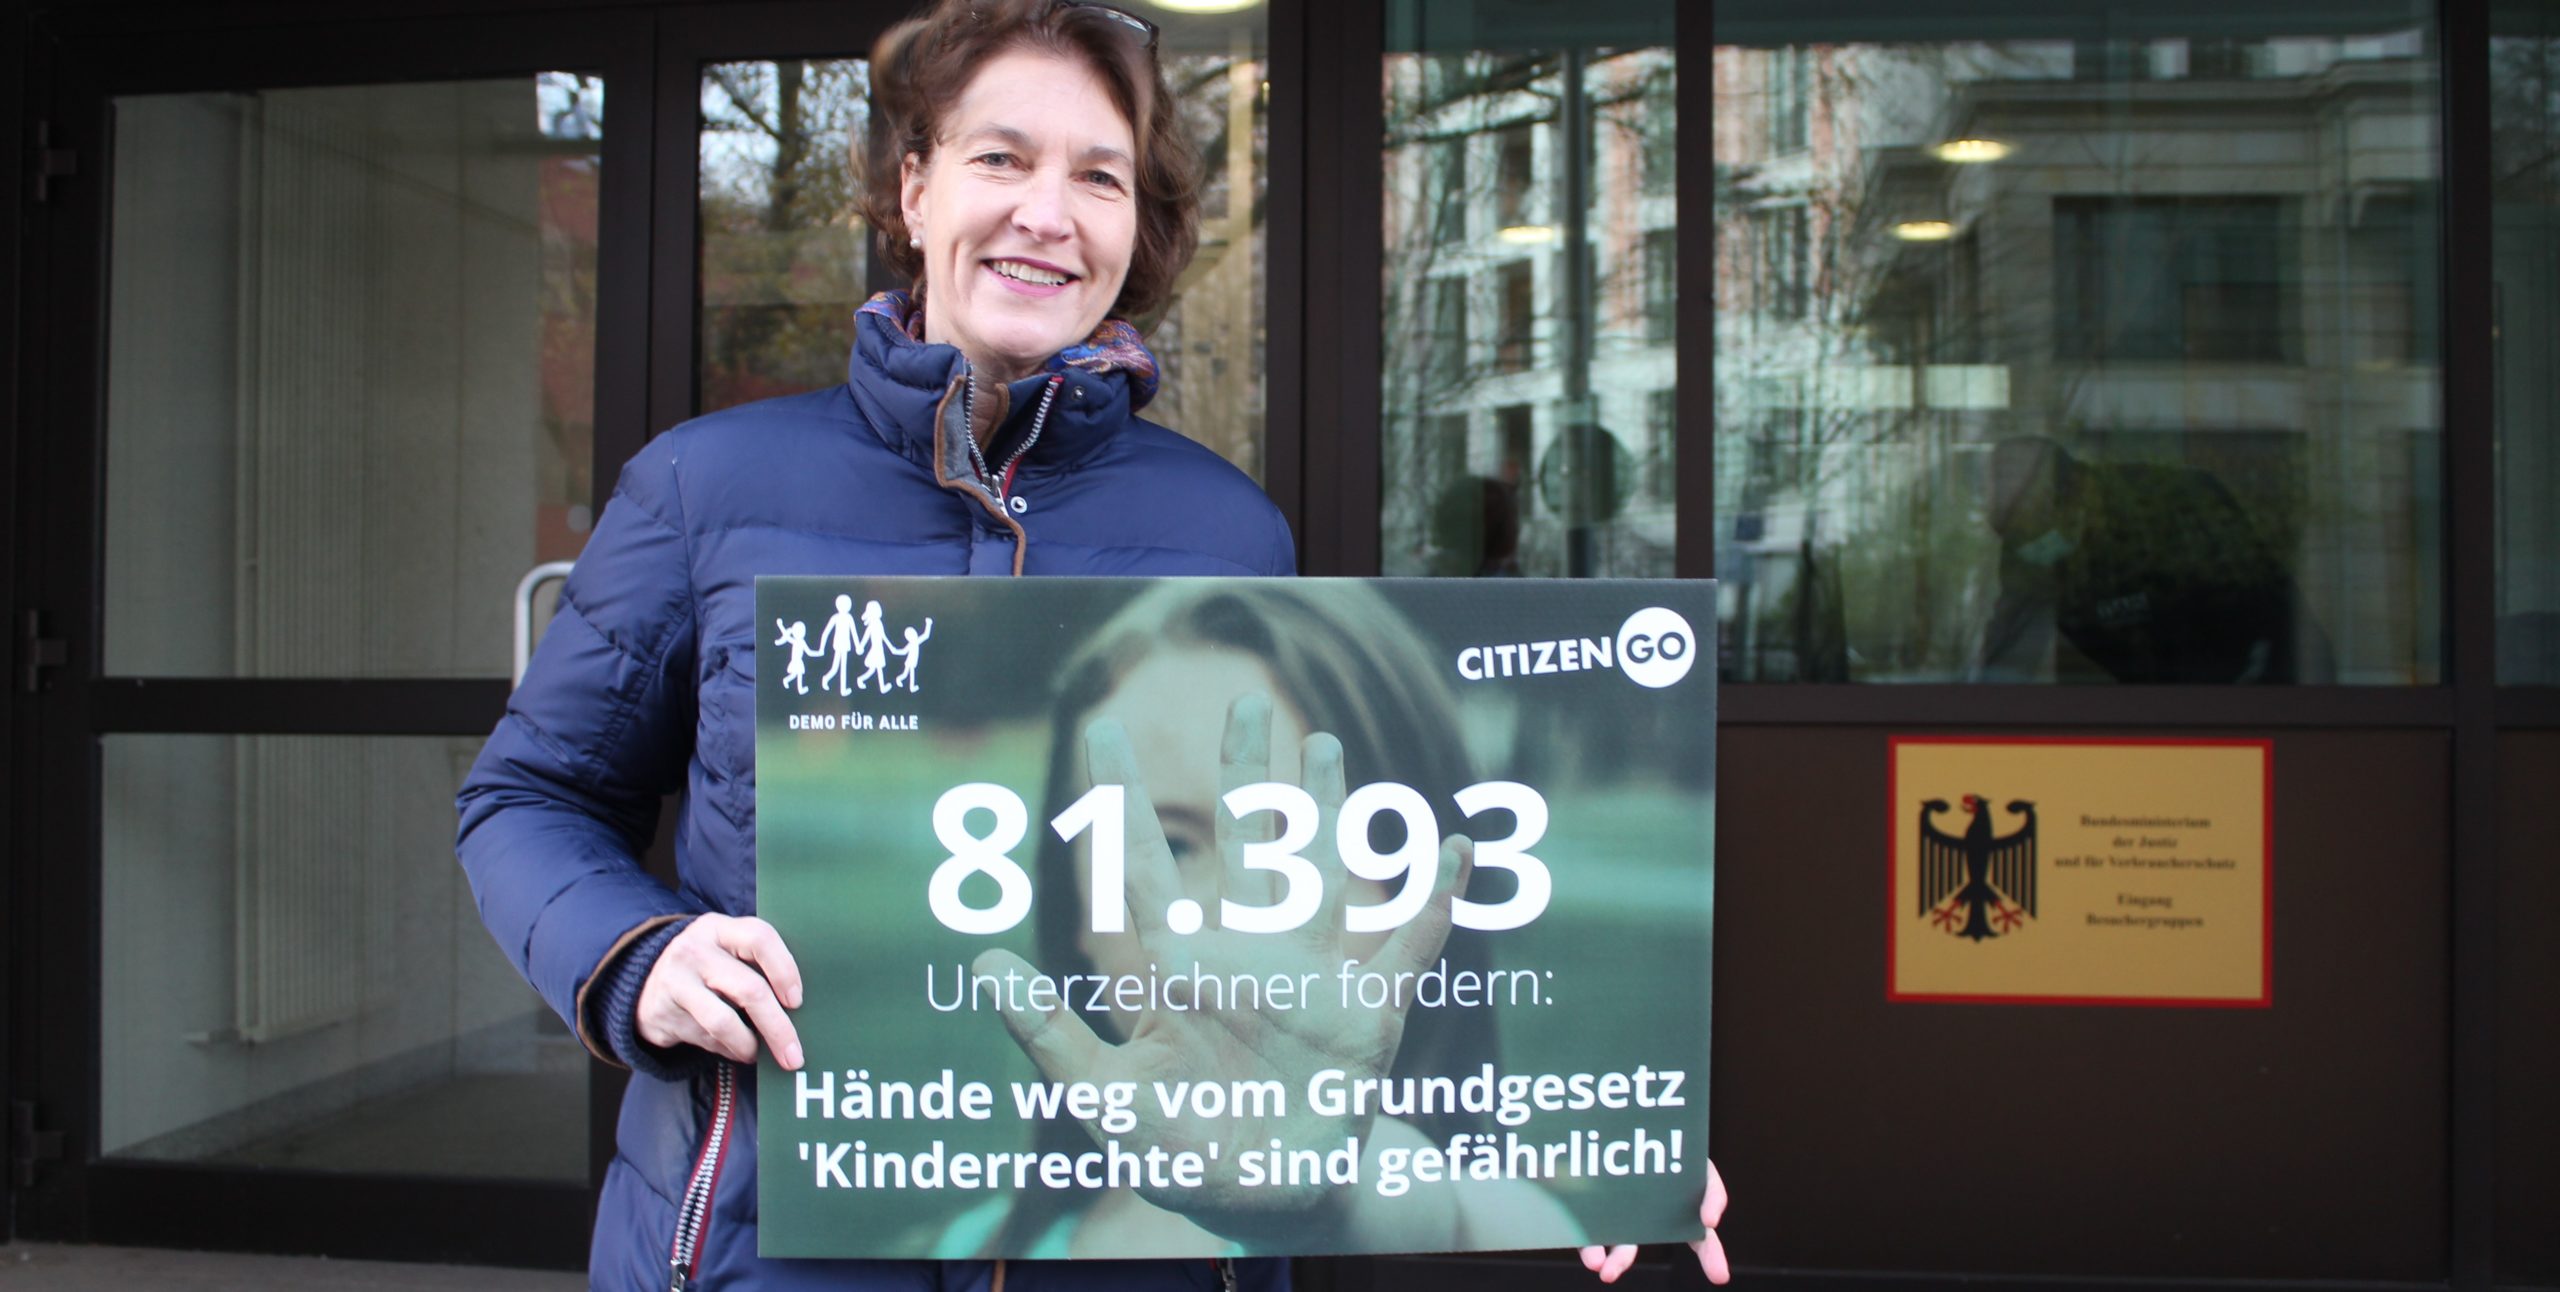 DemoFürAlle-Besuch beim Justizministerium: Keine “Kinderrechte” ins Grundgesetz!